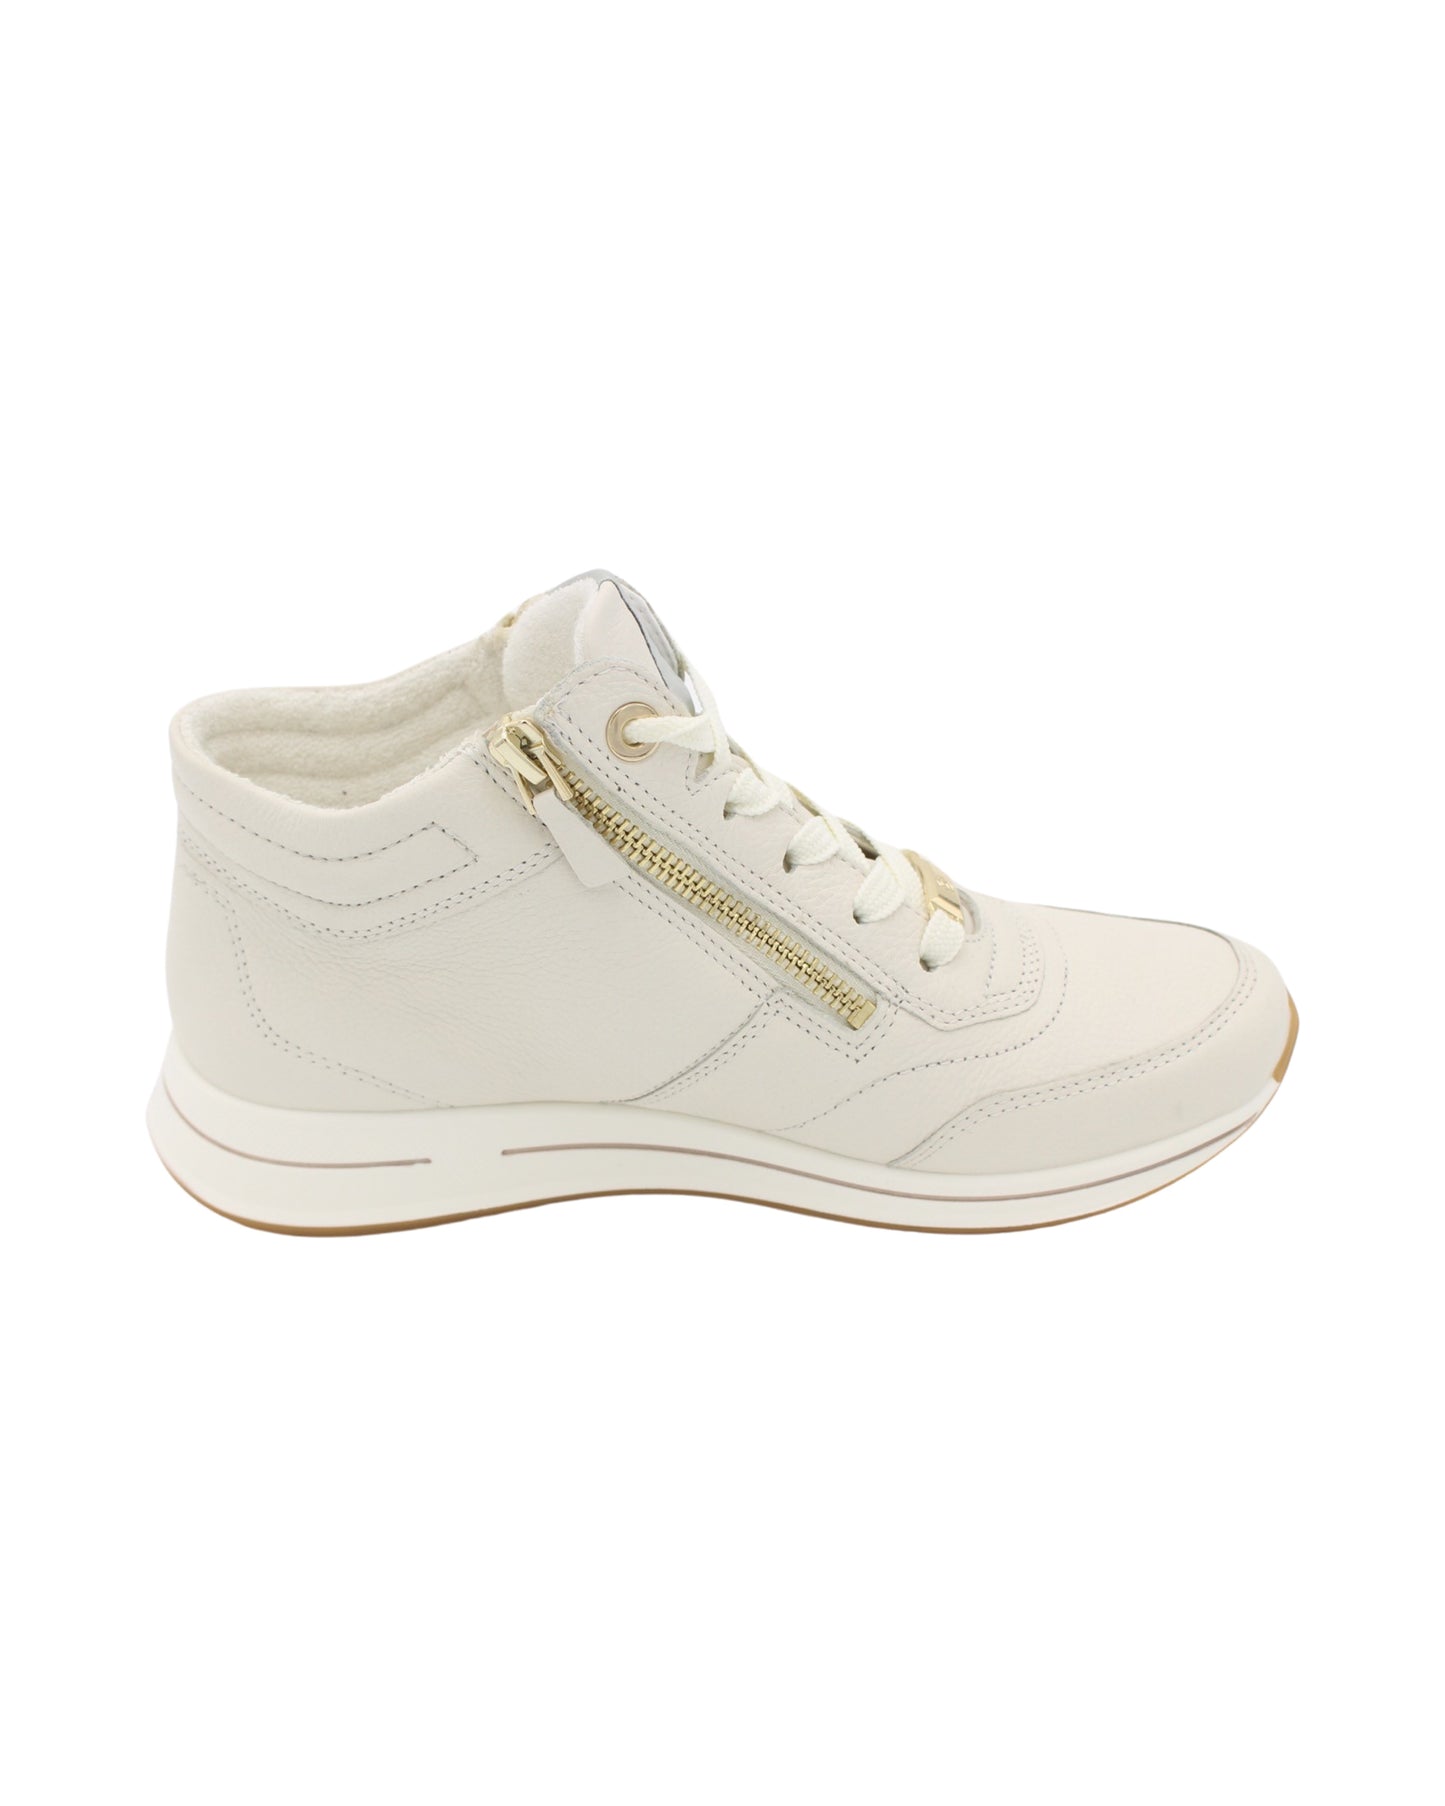 Ara - Ladies Shoes Trainers Cream (2230)